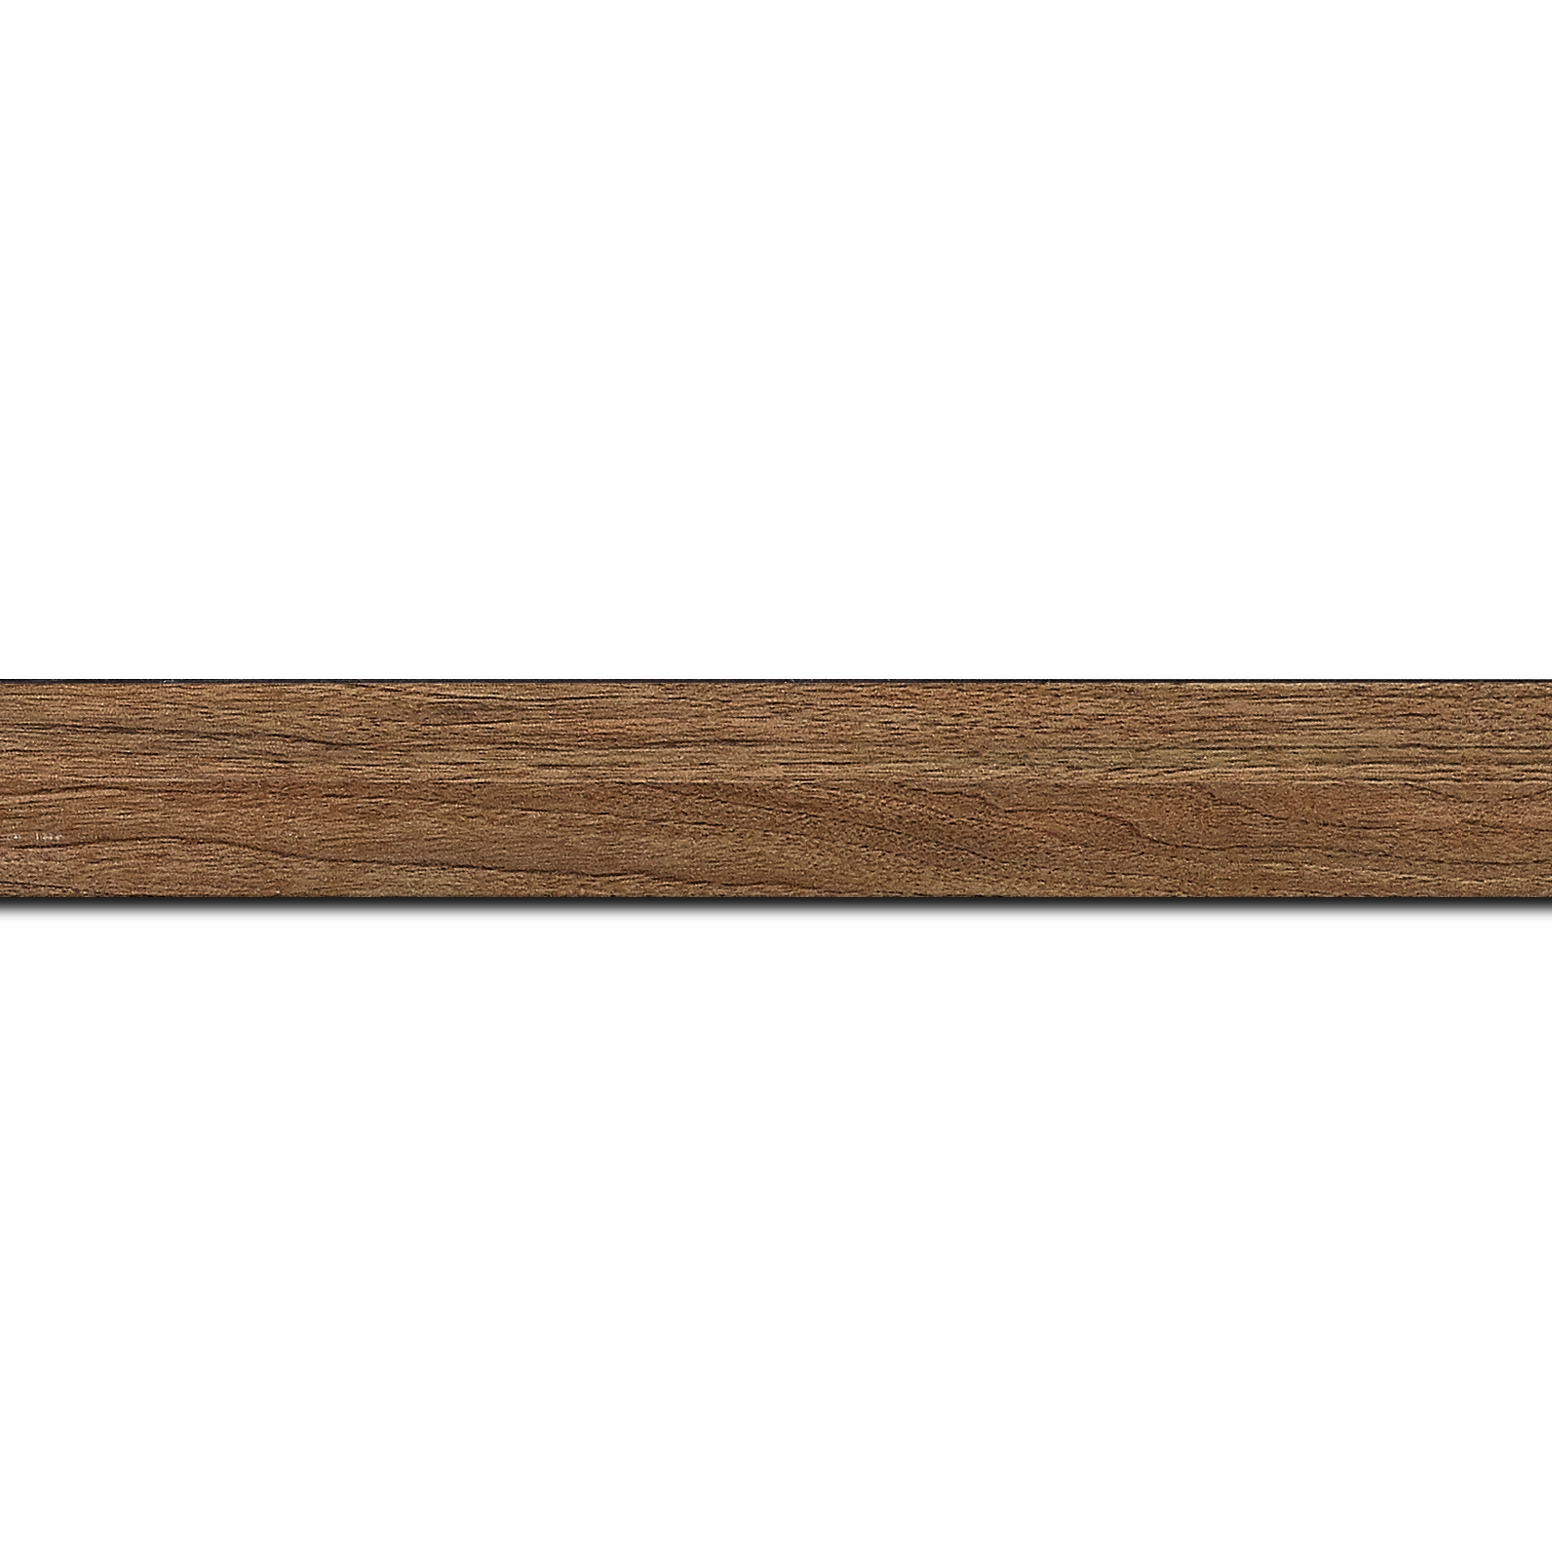 Pack par 12m, bois profil plat largeur 2cm décor bois chêne doré(longueur baguette pouvant varier entre 2.40m et 3m selon arrivage des bois)